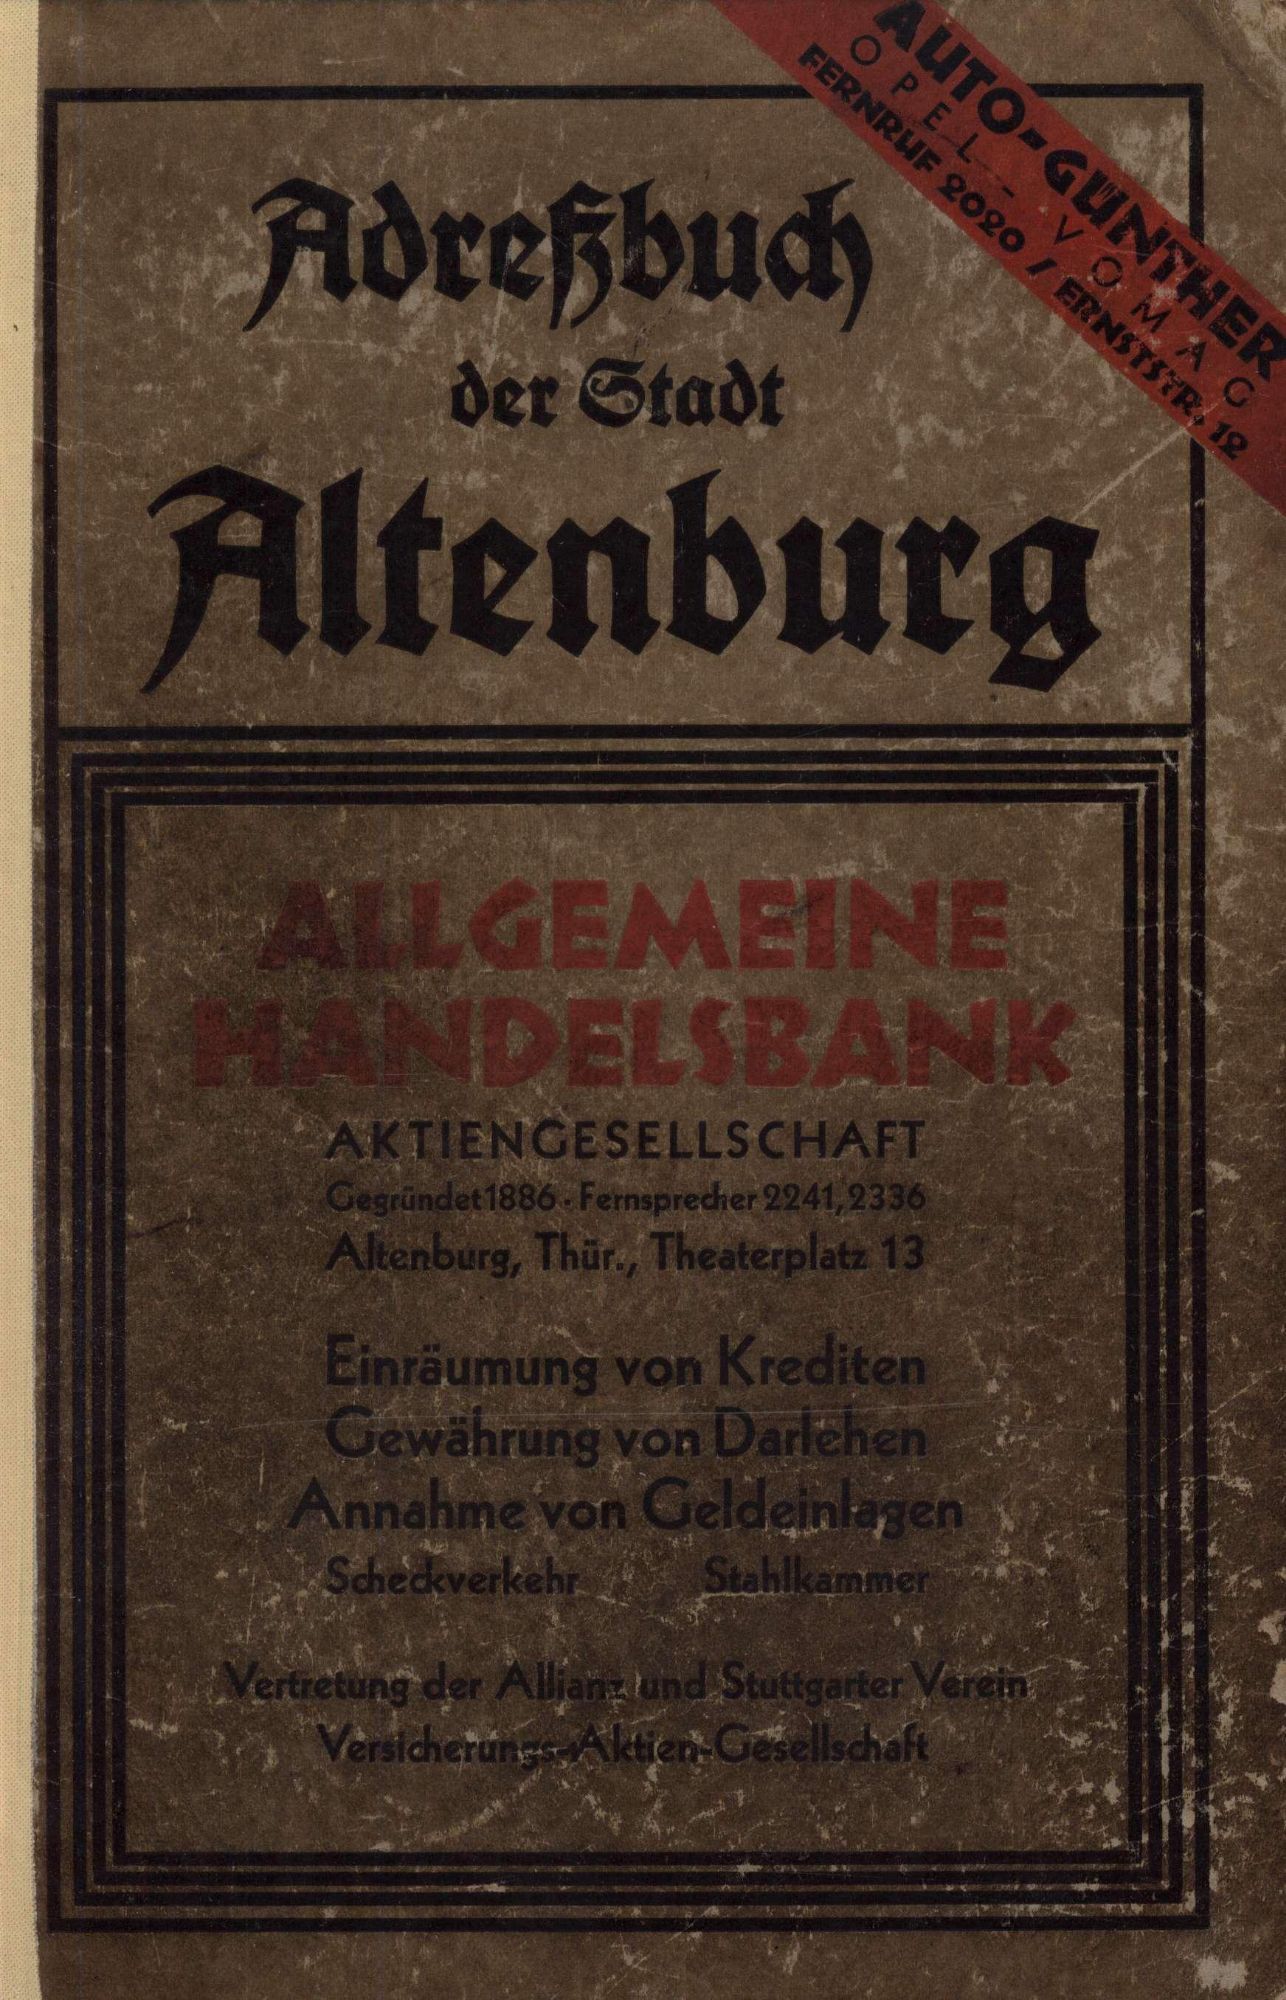 Adreßbuch der Stadt Altenburg 1929